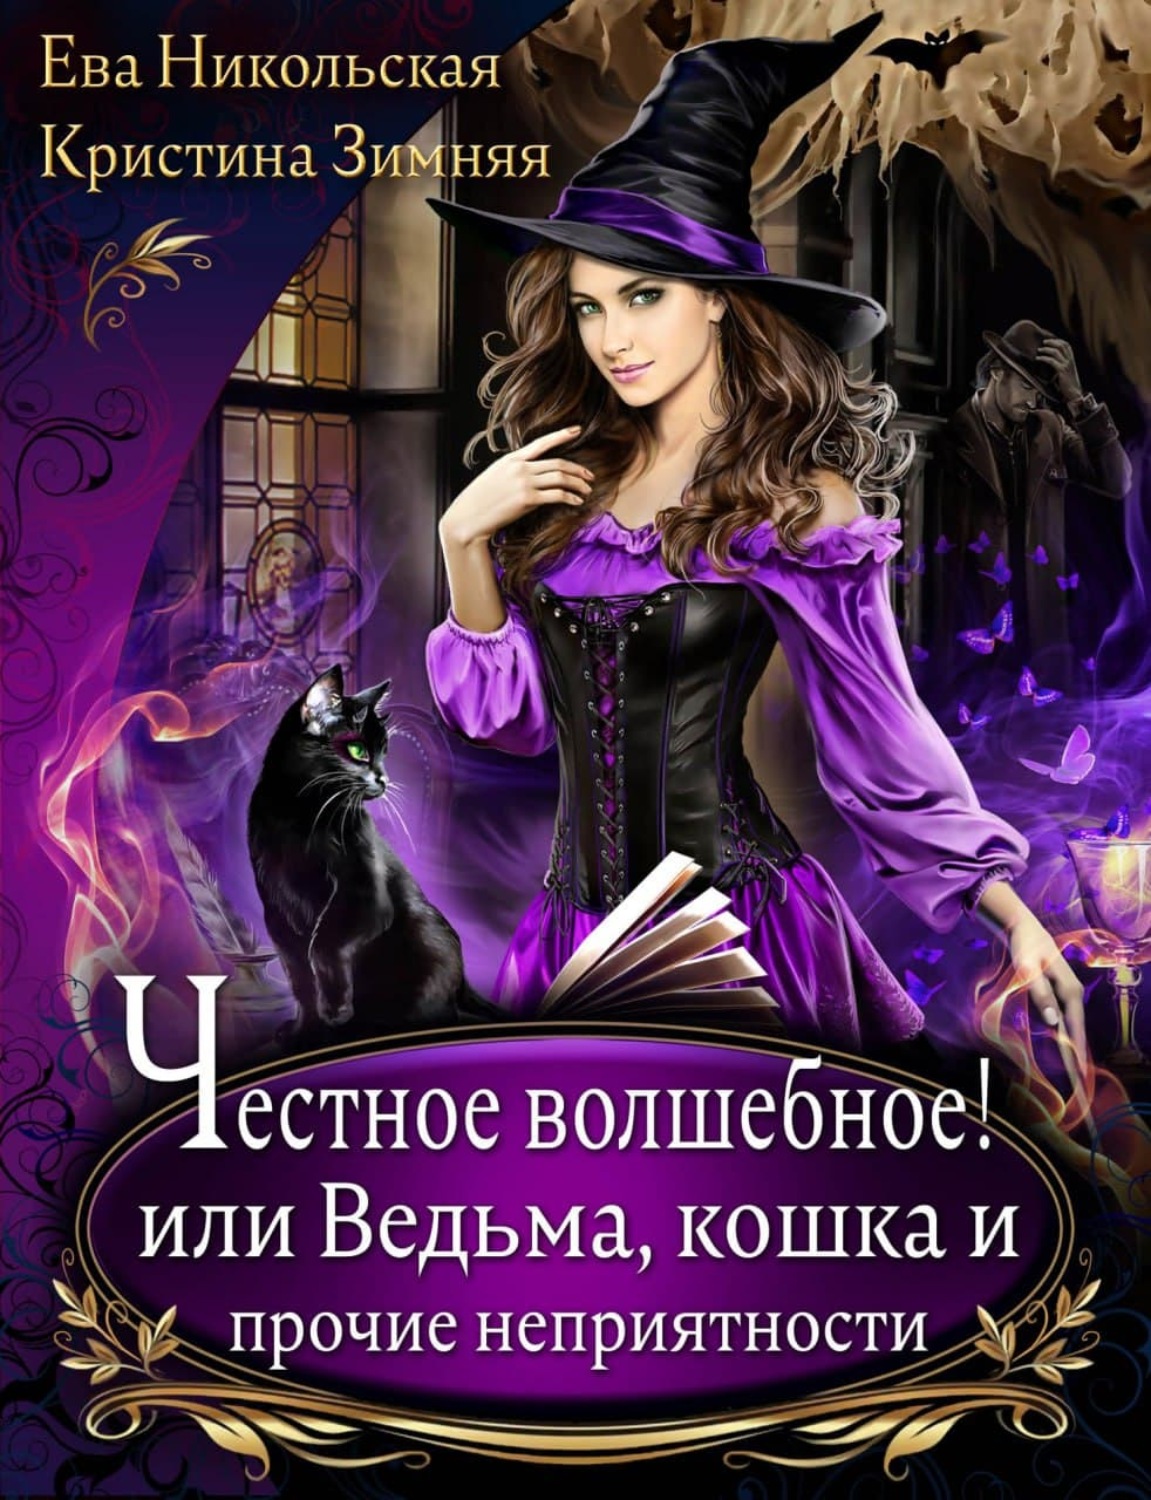 Книги про ведьмы фэнтези магические. Честное волшебное или ведьма кошка и Прочие неприятности 2 книга. Книги про ведьм.